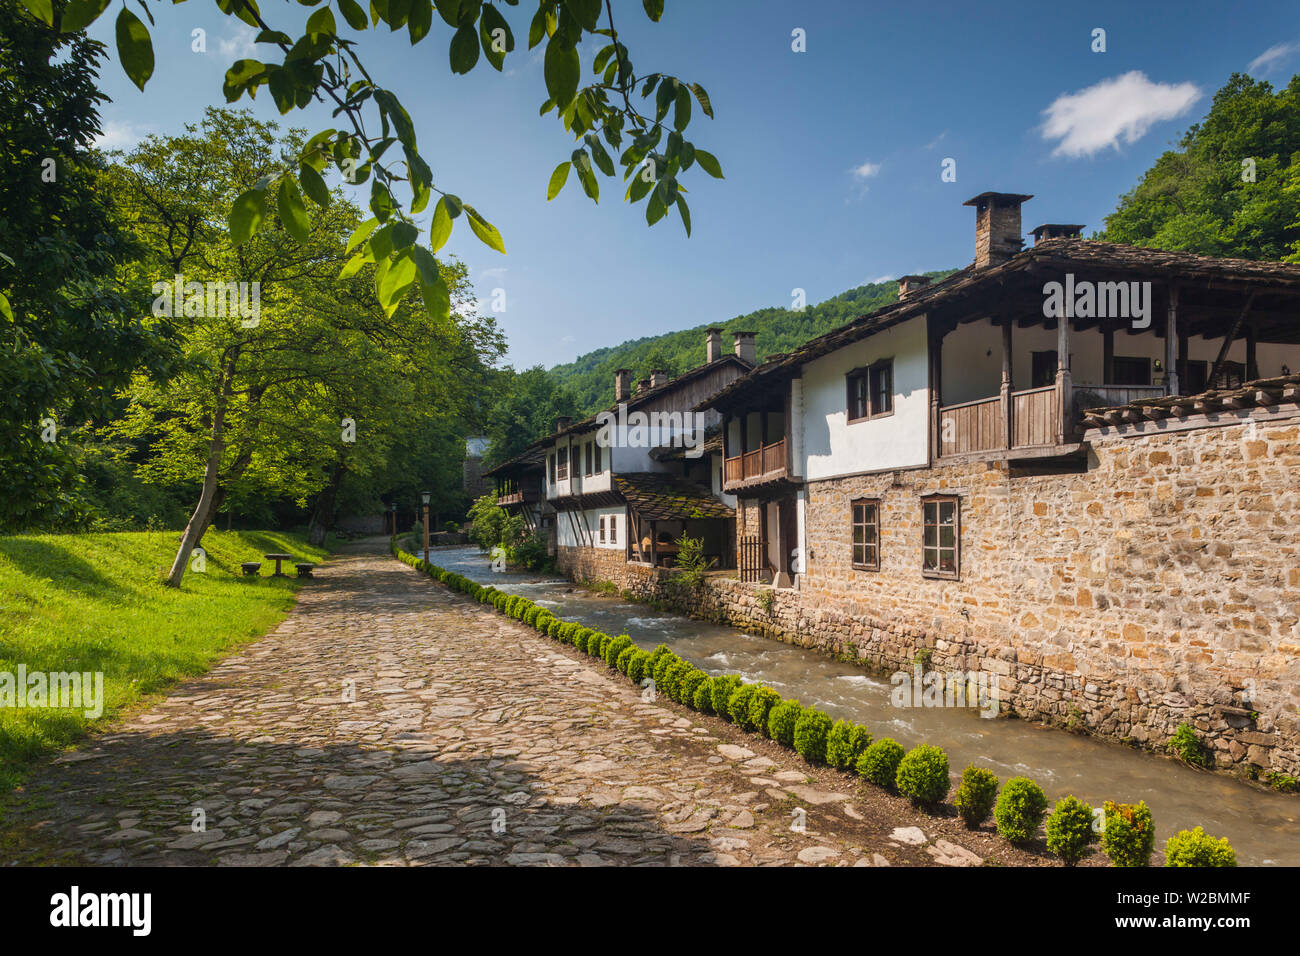 La Bulgarie, montagnes centrales, Etar, Village ethnographique Etar, maisons de l'ère ottomane traditionnelle Banque D'Images